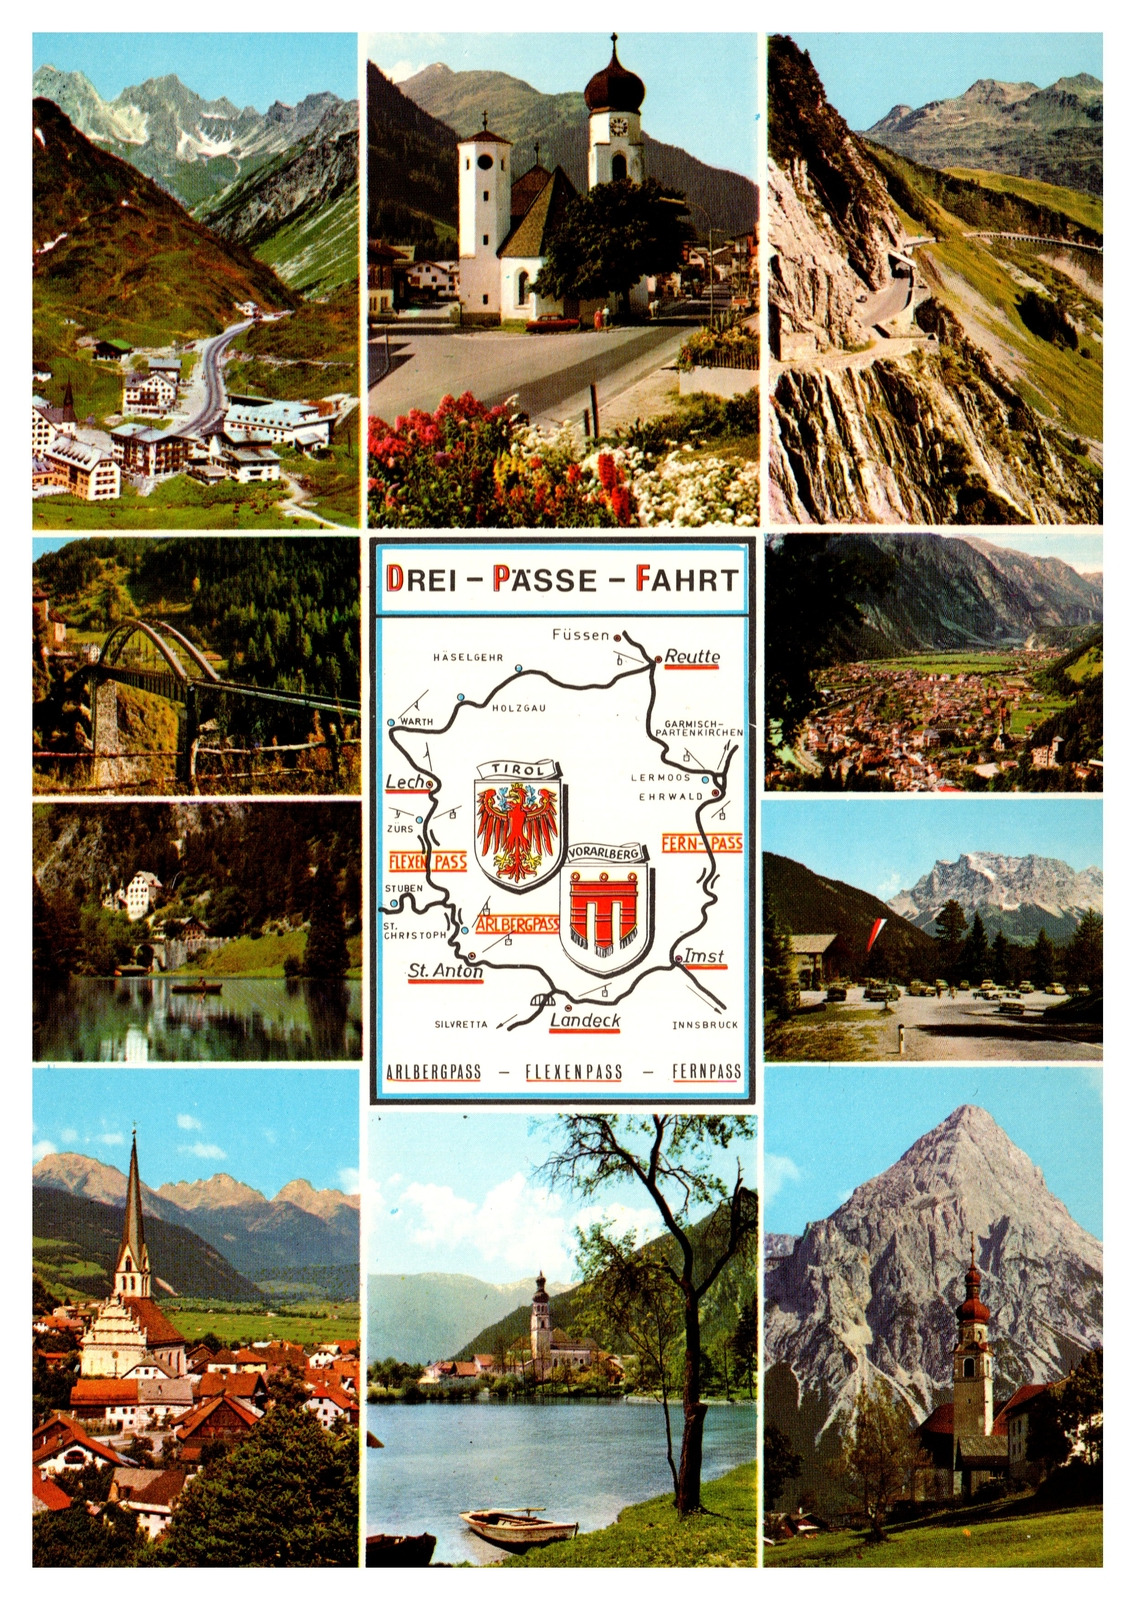 Postcard Switzerland Three Pass Ride Arlbergpass Flexenpass Fernpass